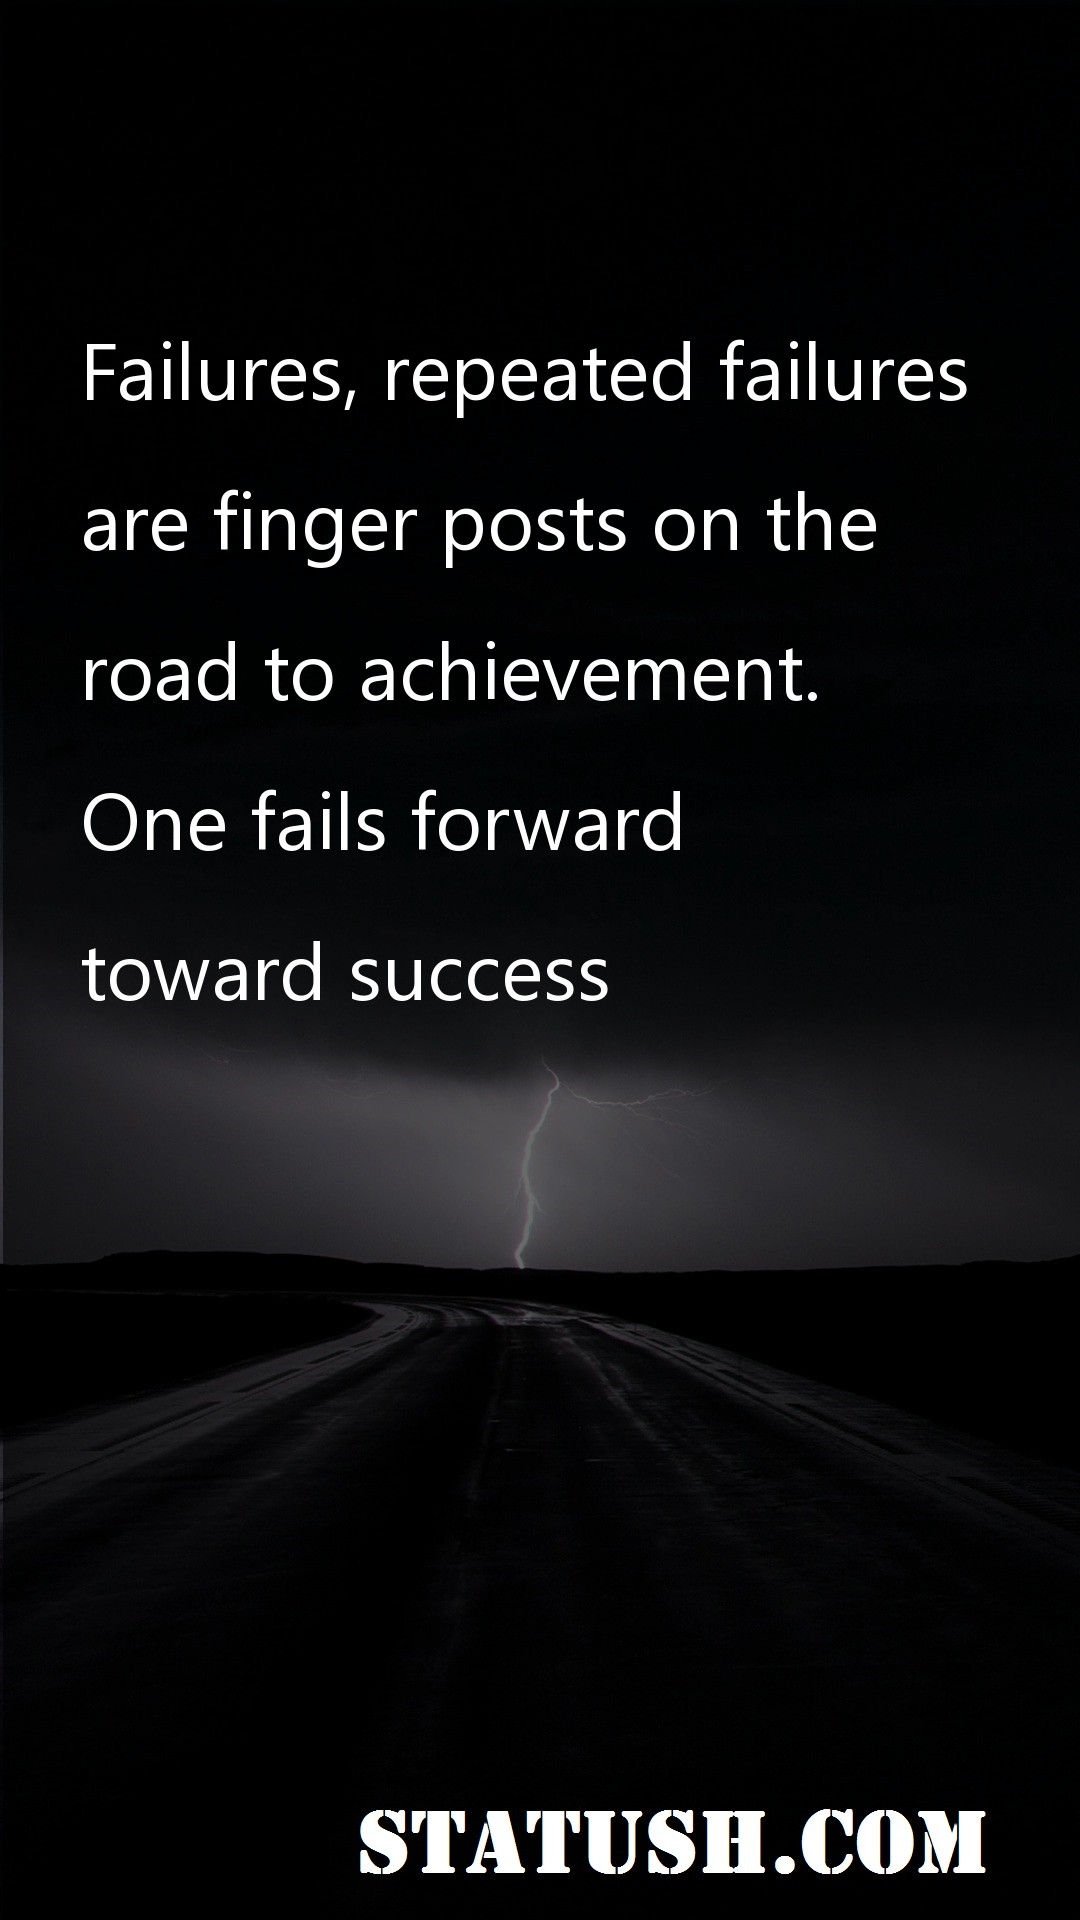 Failures repeated failures - Success Quotes at statush.com